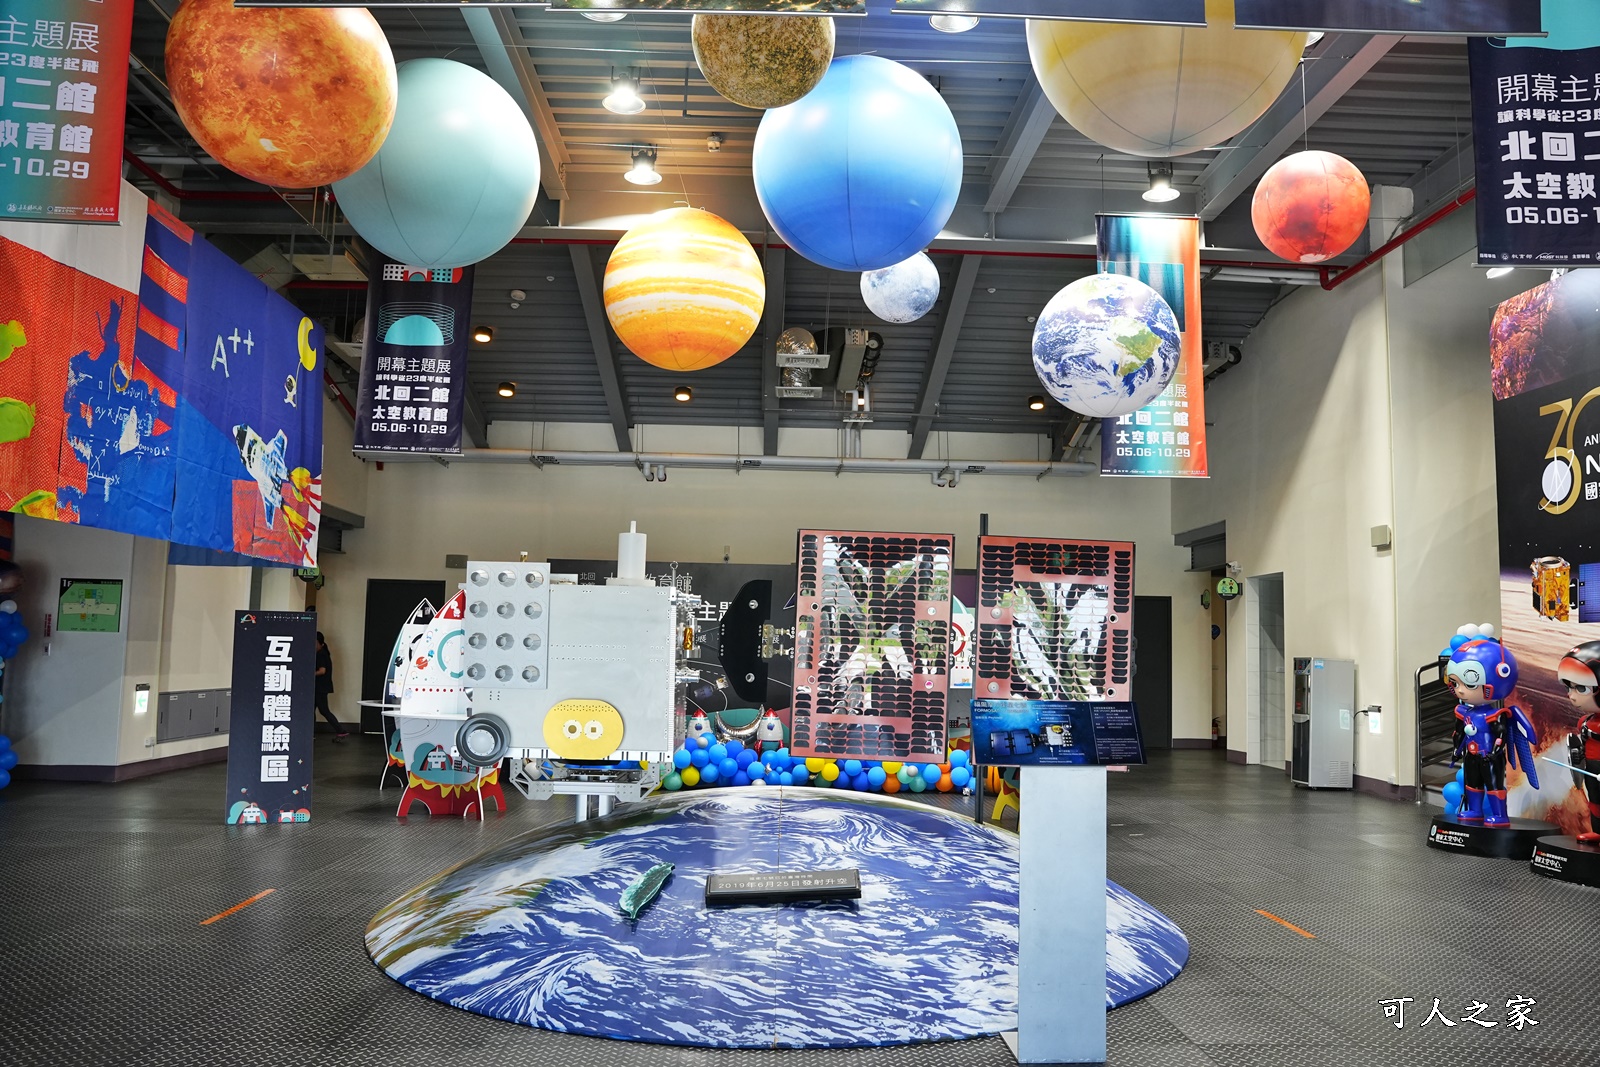 北回二館-太空教育館,嘉義景點,太空梭遊戲組,火箭模型